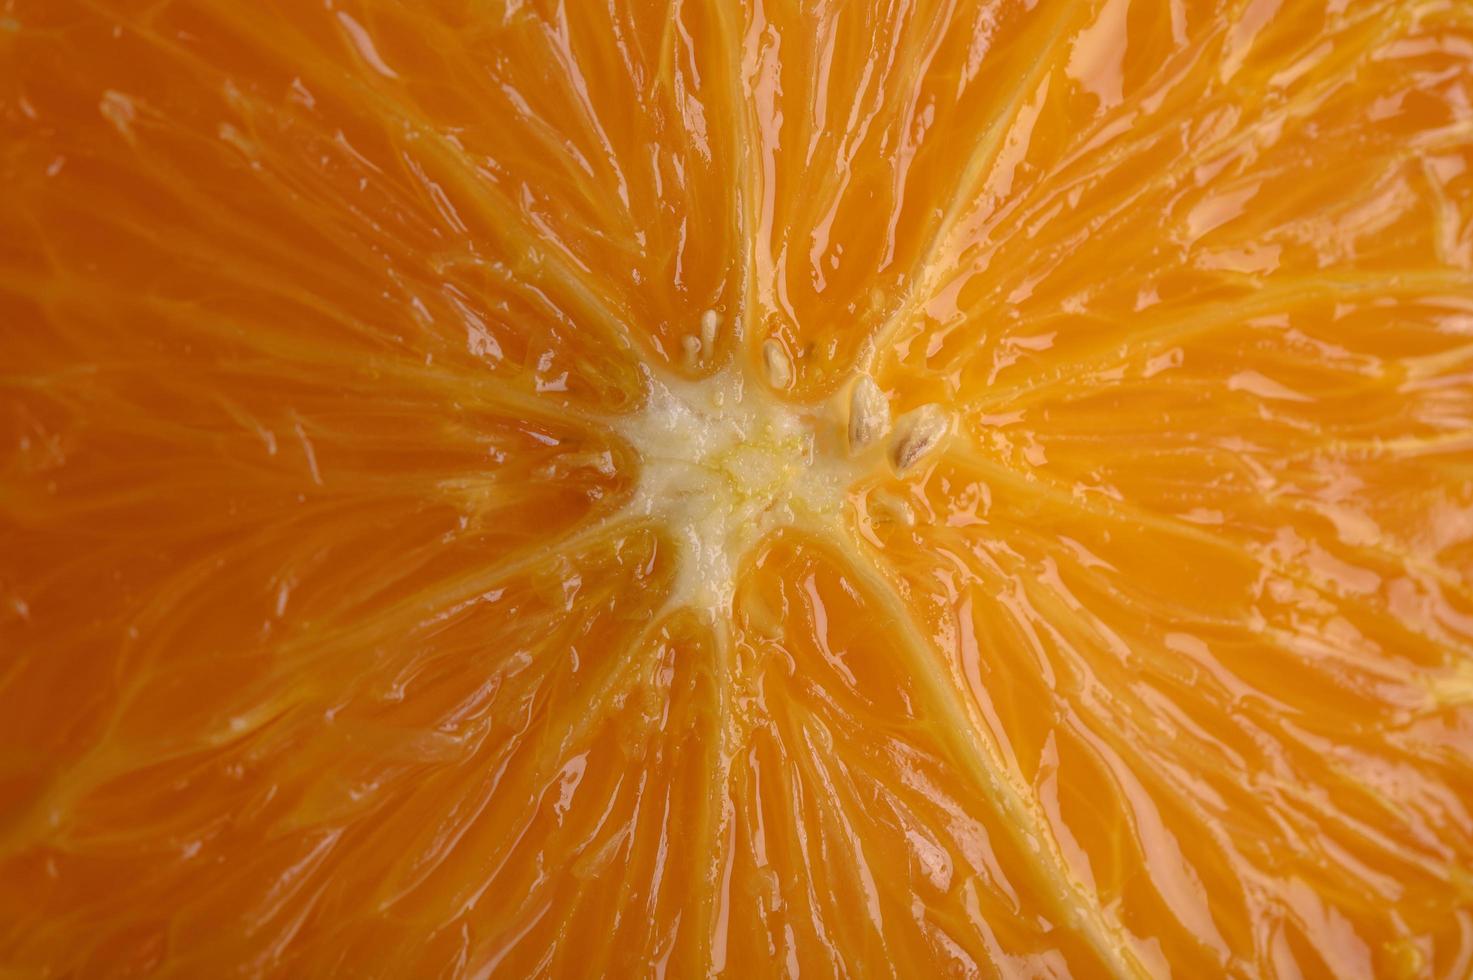 imagem macro de laranja madura com pequena profundidade de campo foto